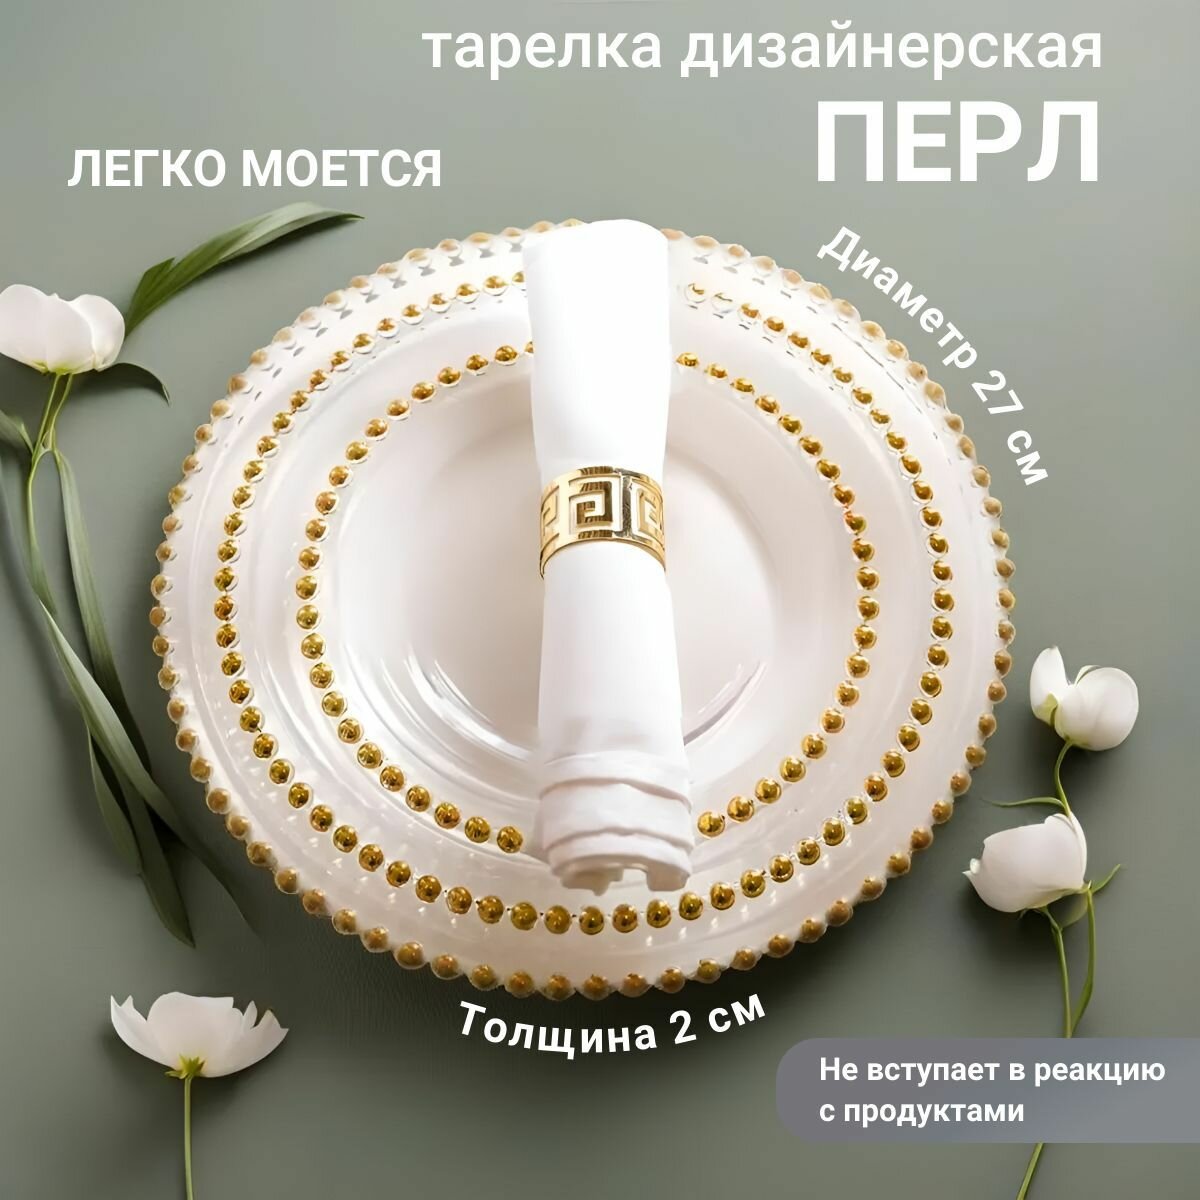 Тарелки дизайнерские набор из 6 штук Перл SJ-0502/6, белые/золотые, 27 см